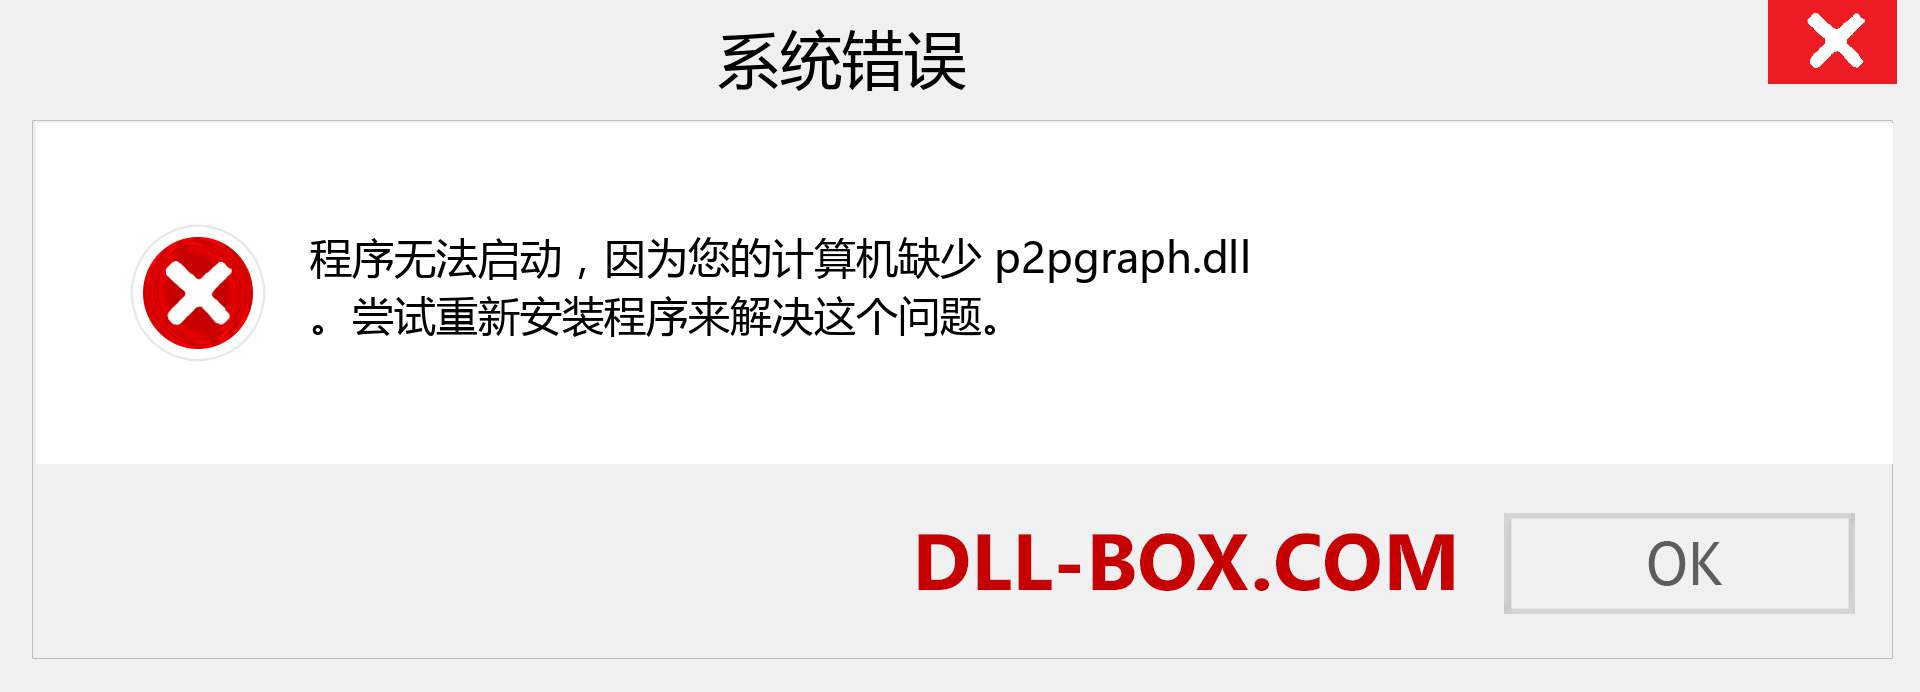 p2pgraph.dll 文件丢失？。 适用于 Windows 7、8、10 的下载 - 修复 Windows、照片、图像上的 p2pgraph dll 丢失错误